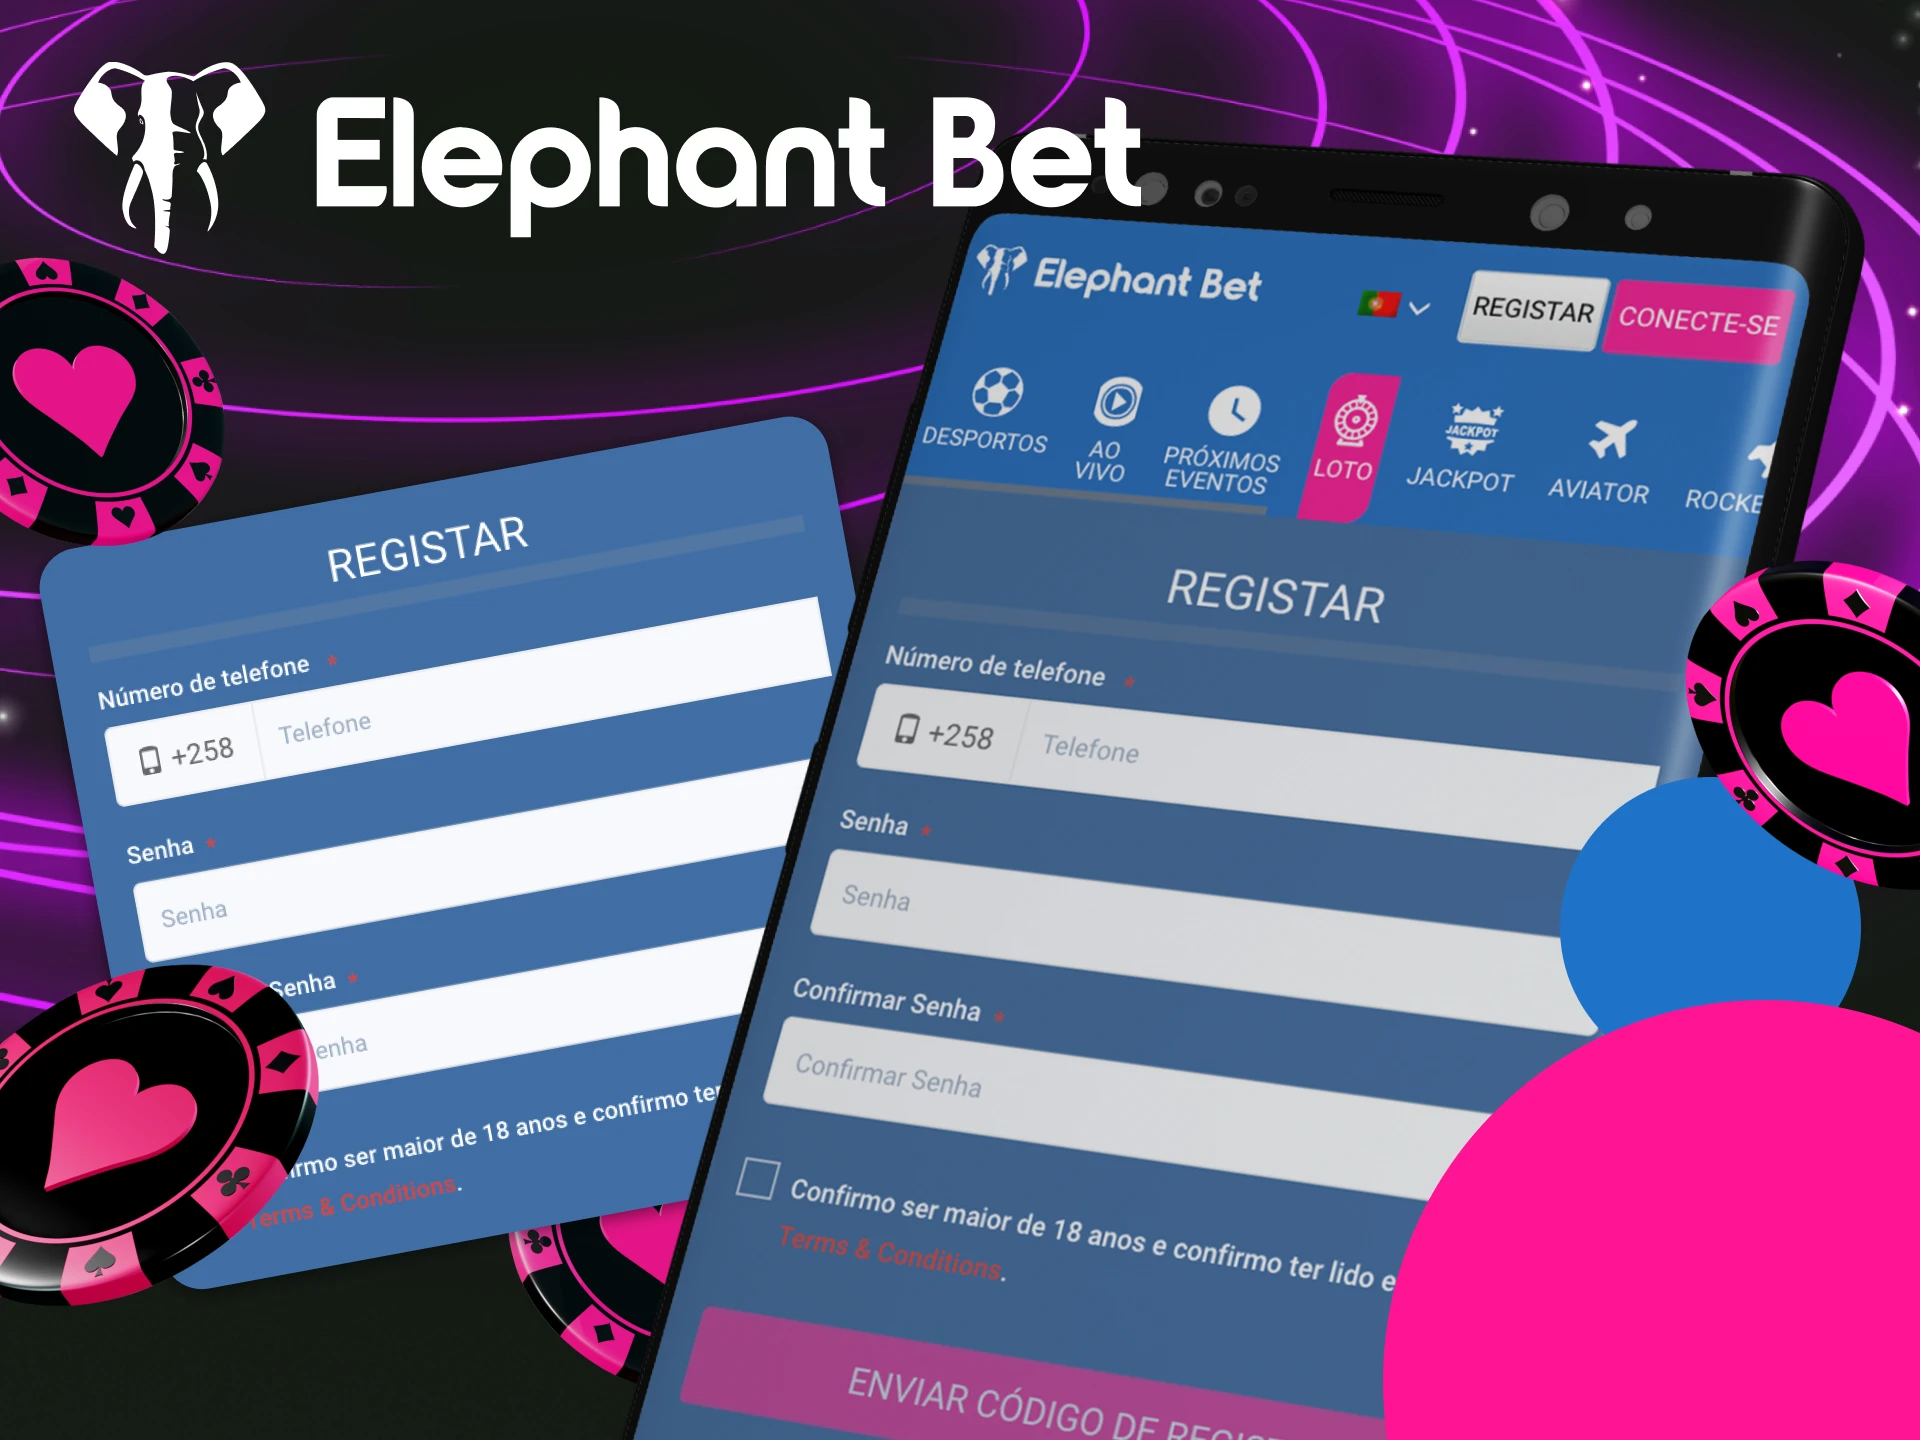 Posso criar uma nova conta no cassino online Elephant Bet usando meu telefone.